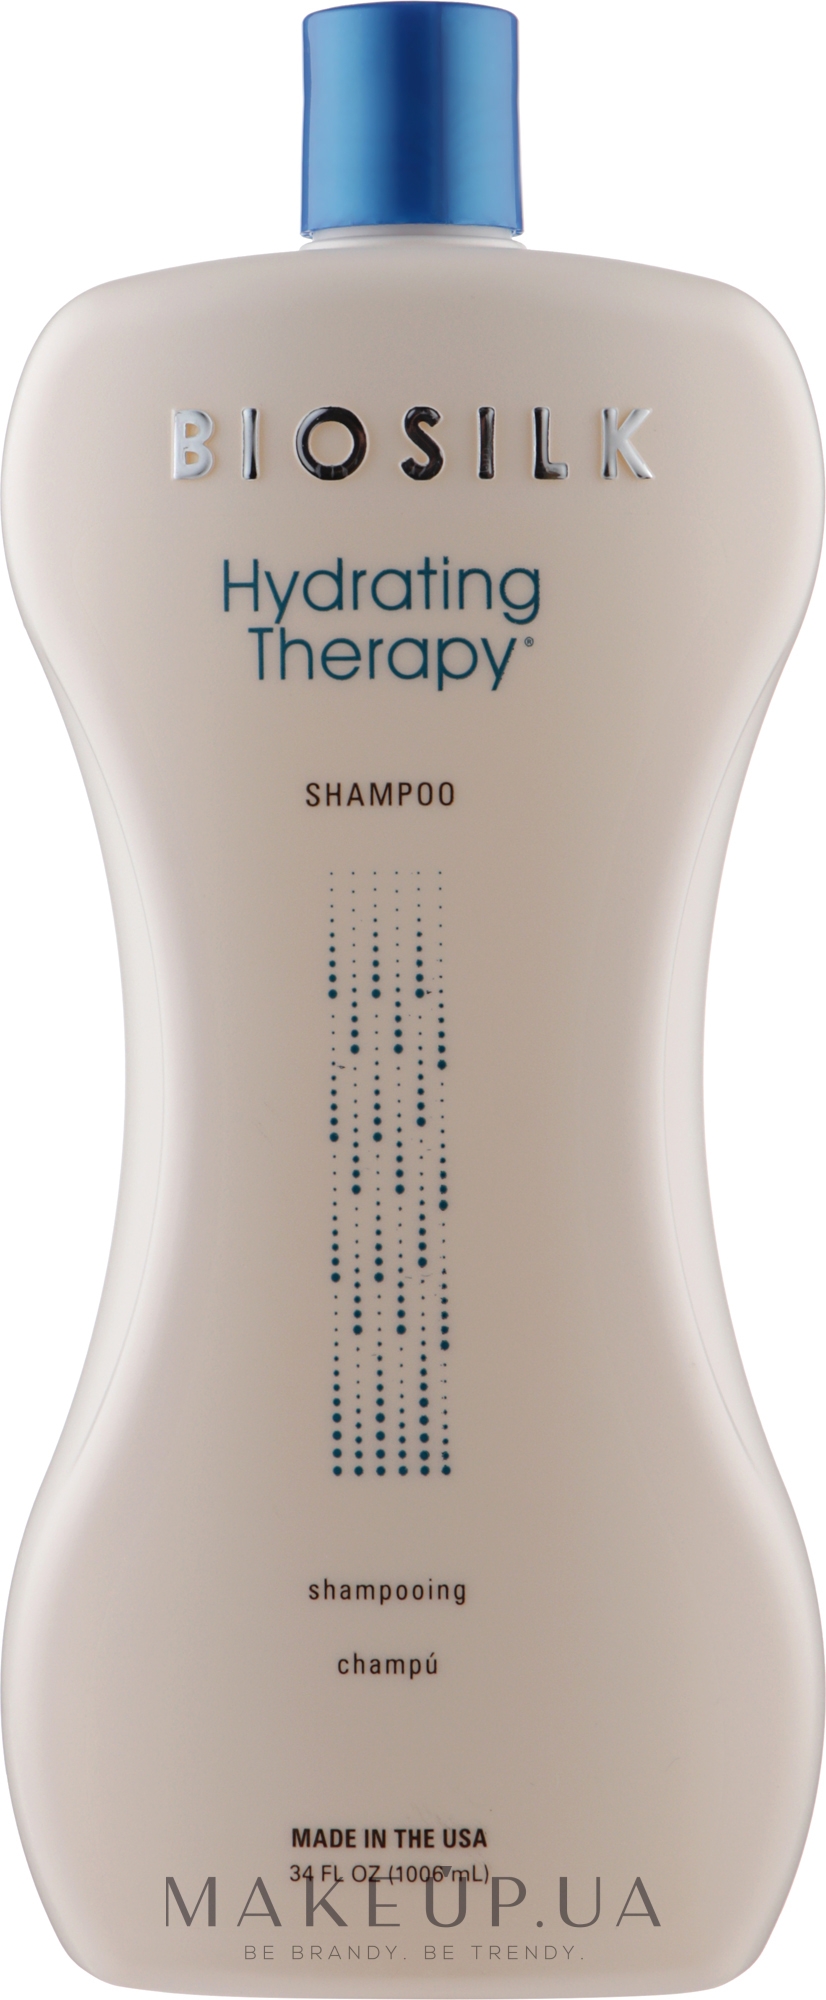 Шампунь для глубокого увлажнения волос - BioSilk Hydrating Therapy Shampoo — фото 1006ml